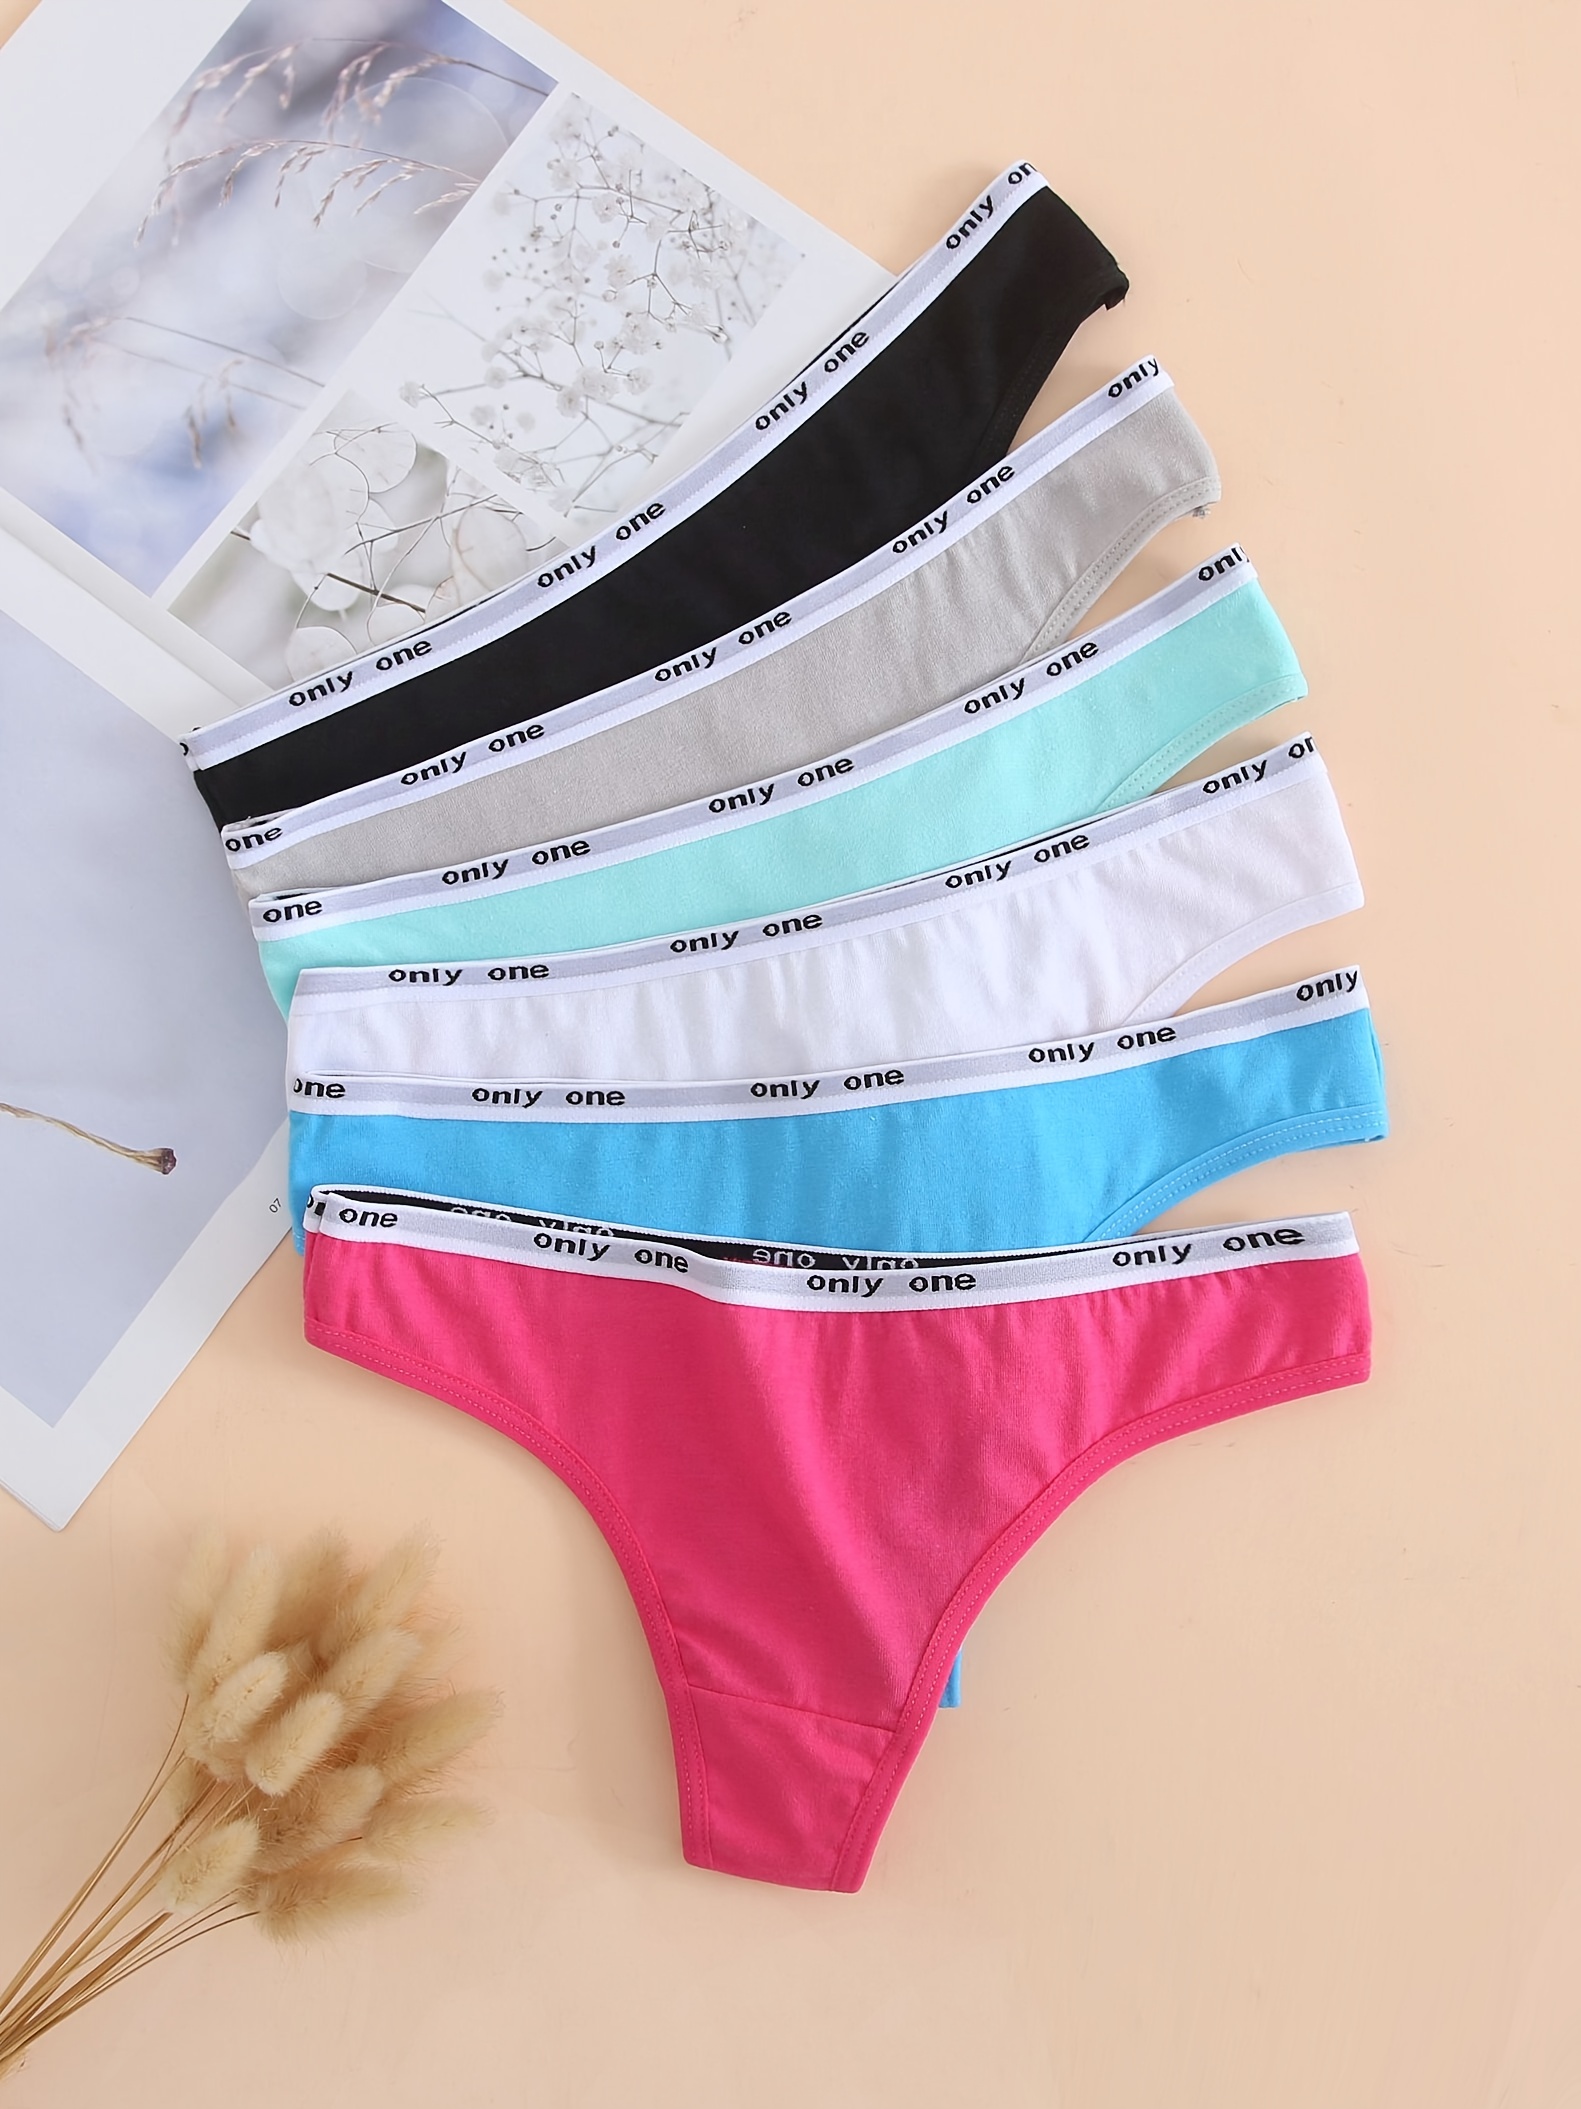 Cheap 3Pcs/Pack Women Cotton Panties Female Underwear Solid Color